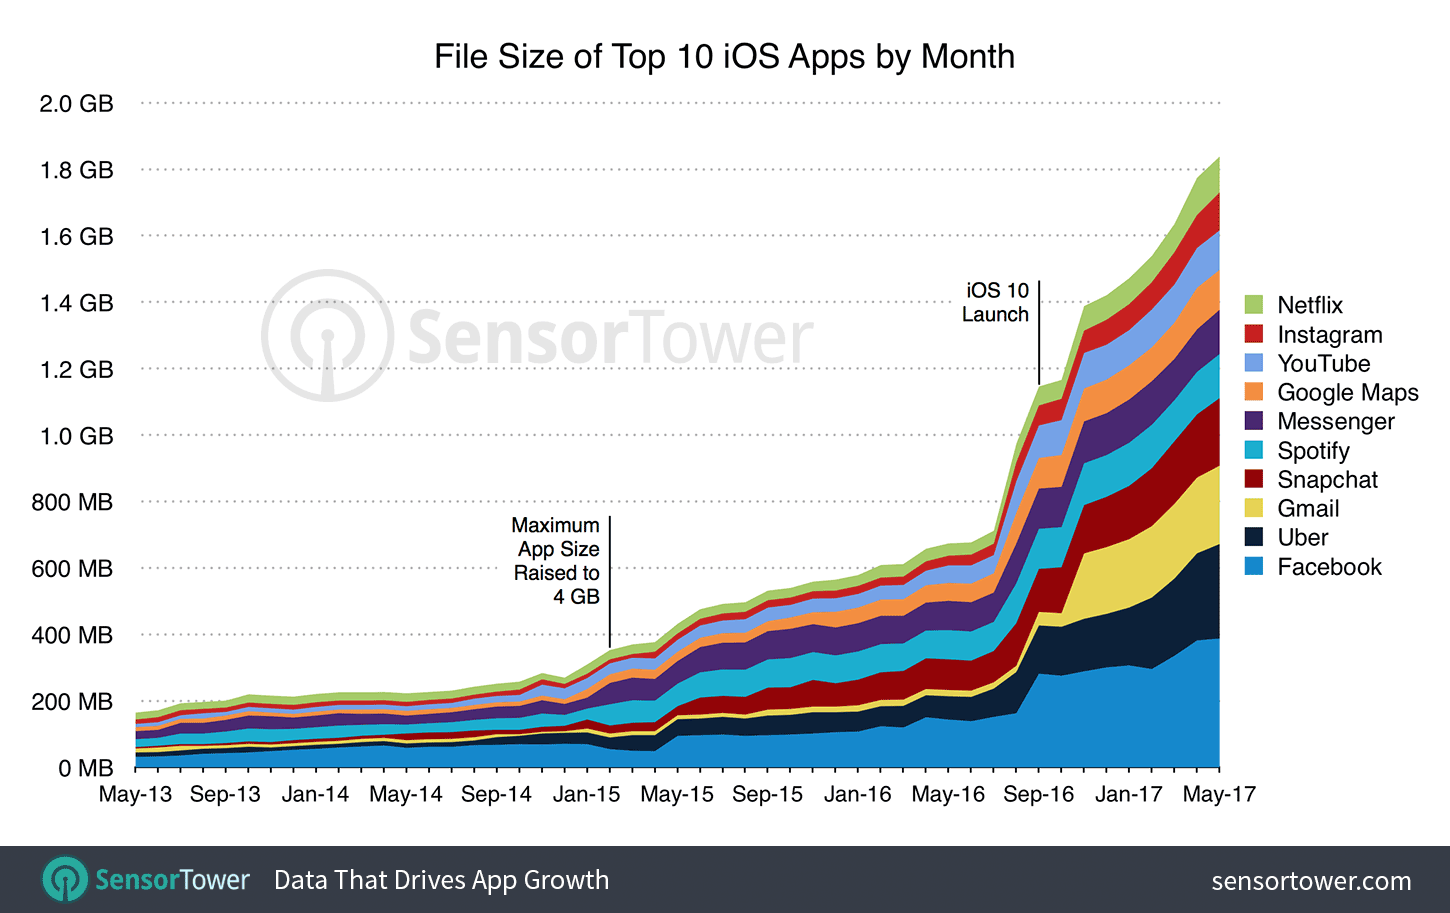 Levantamento sobre crescimento do tamanho dos principais apps da App Store, da Sensor Tower